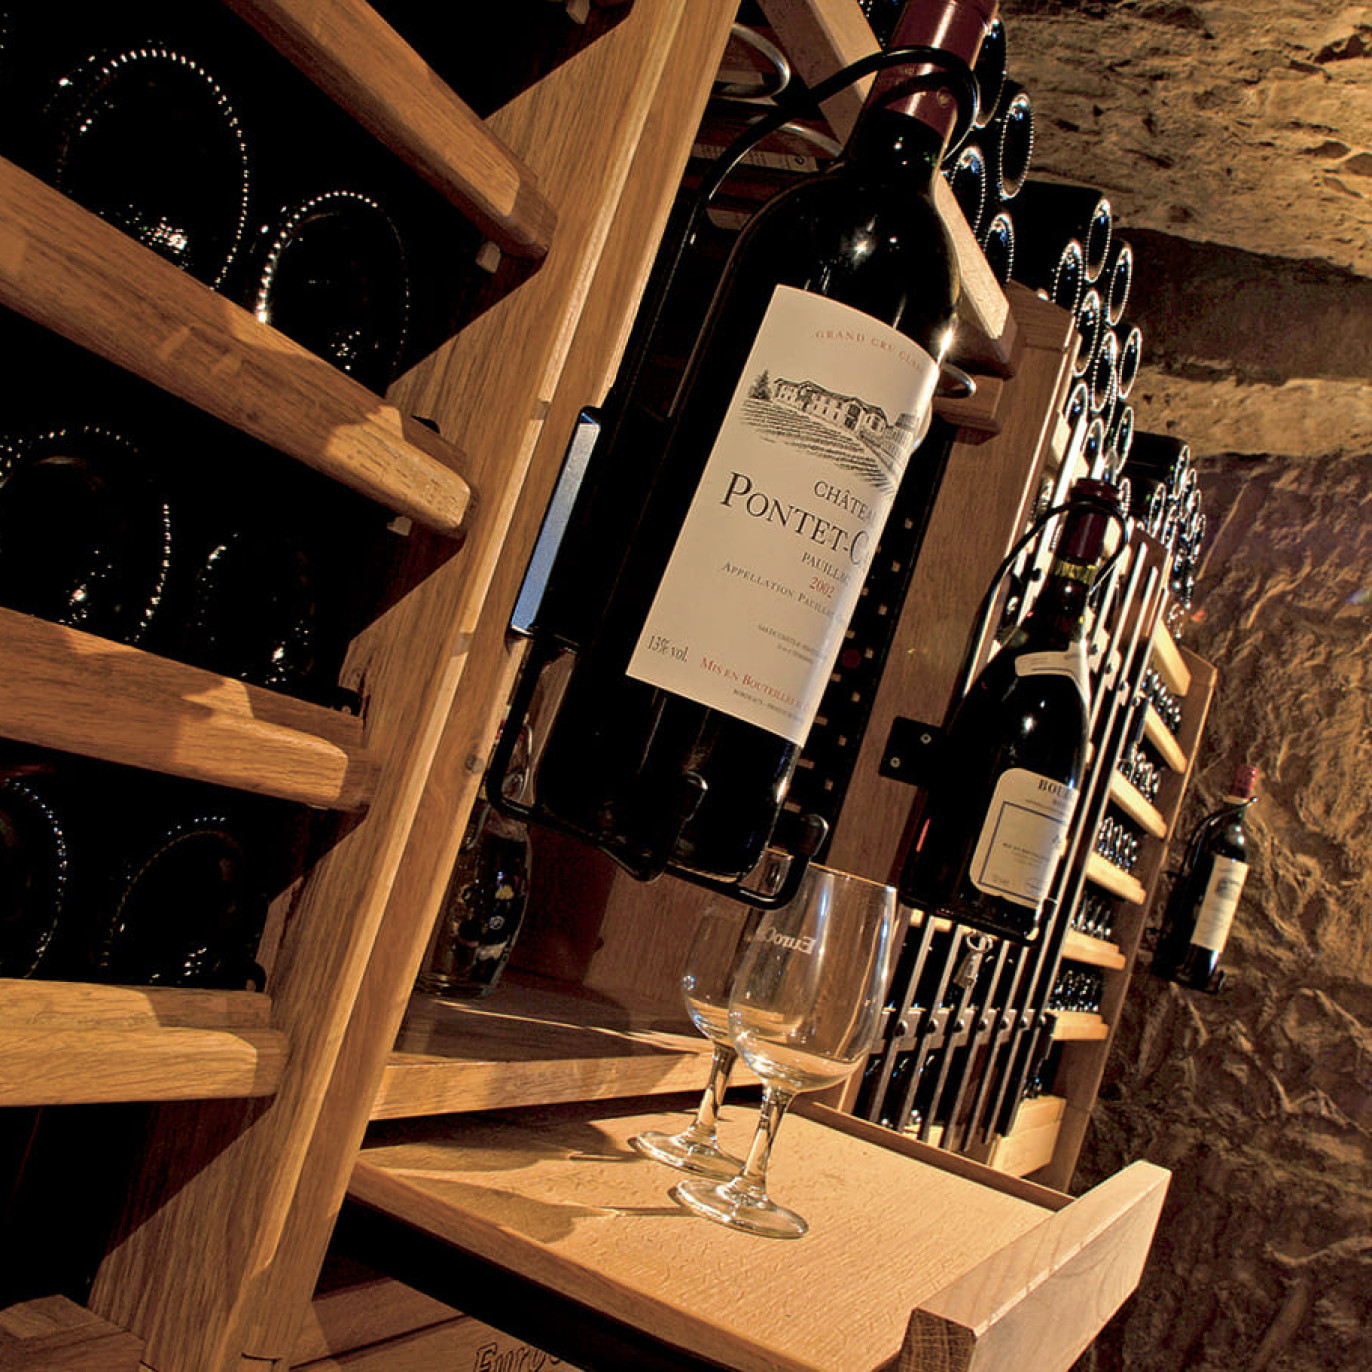 Meuble bar pour partager un verre de vin avec vos amis amateurs de vin dans votre espace dégustation.